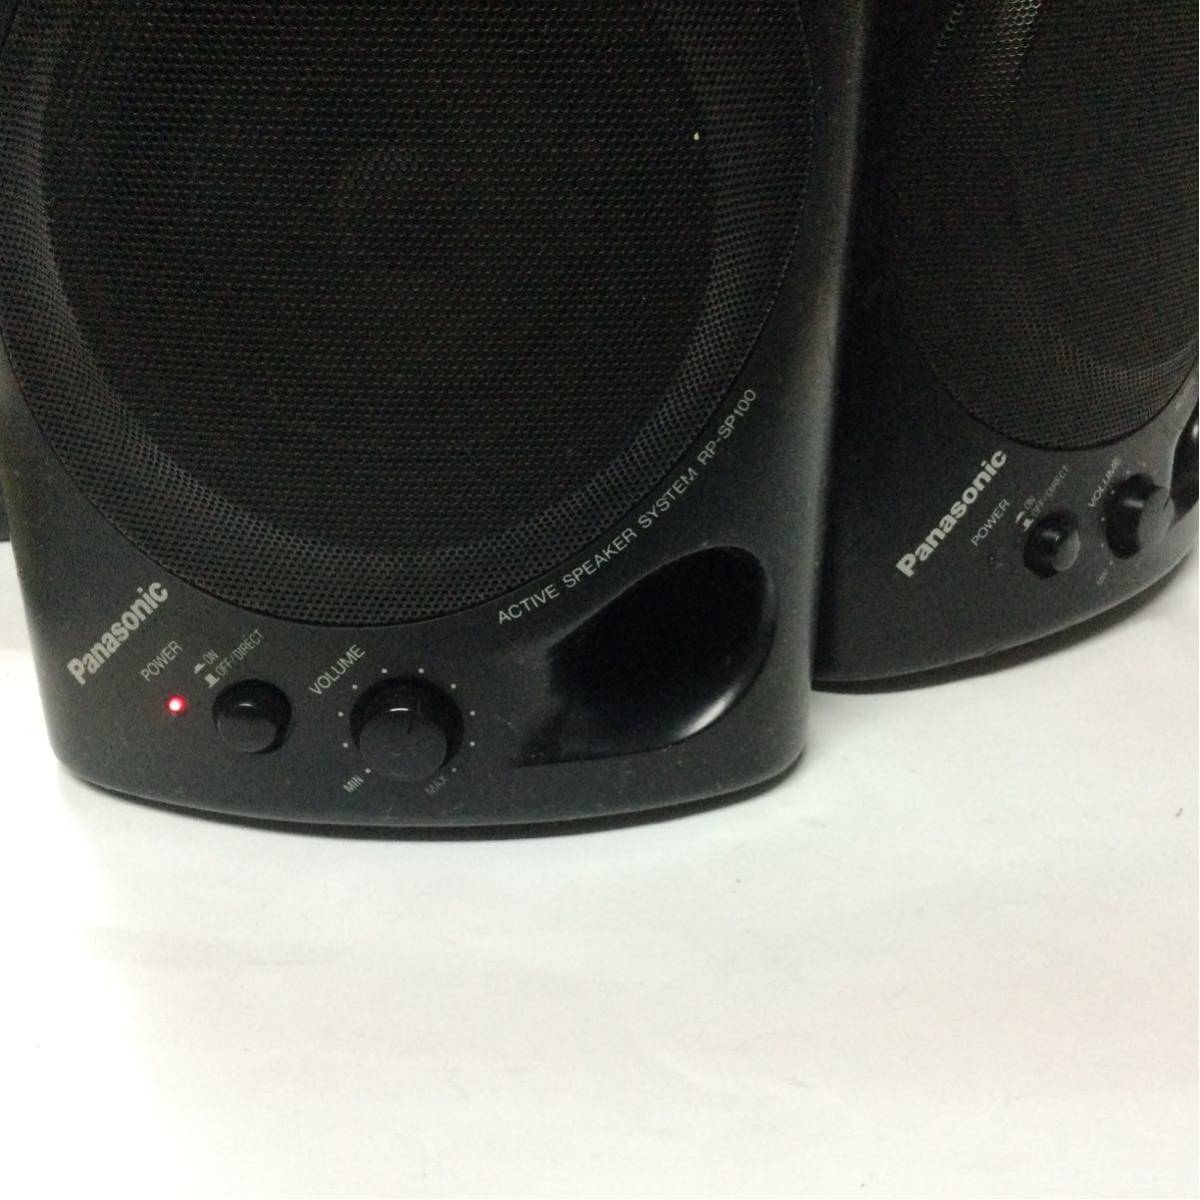 Panasonic active speakers RP-SP100 adaptor attaching Panasonic 